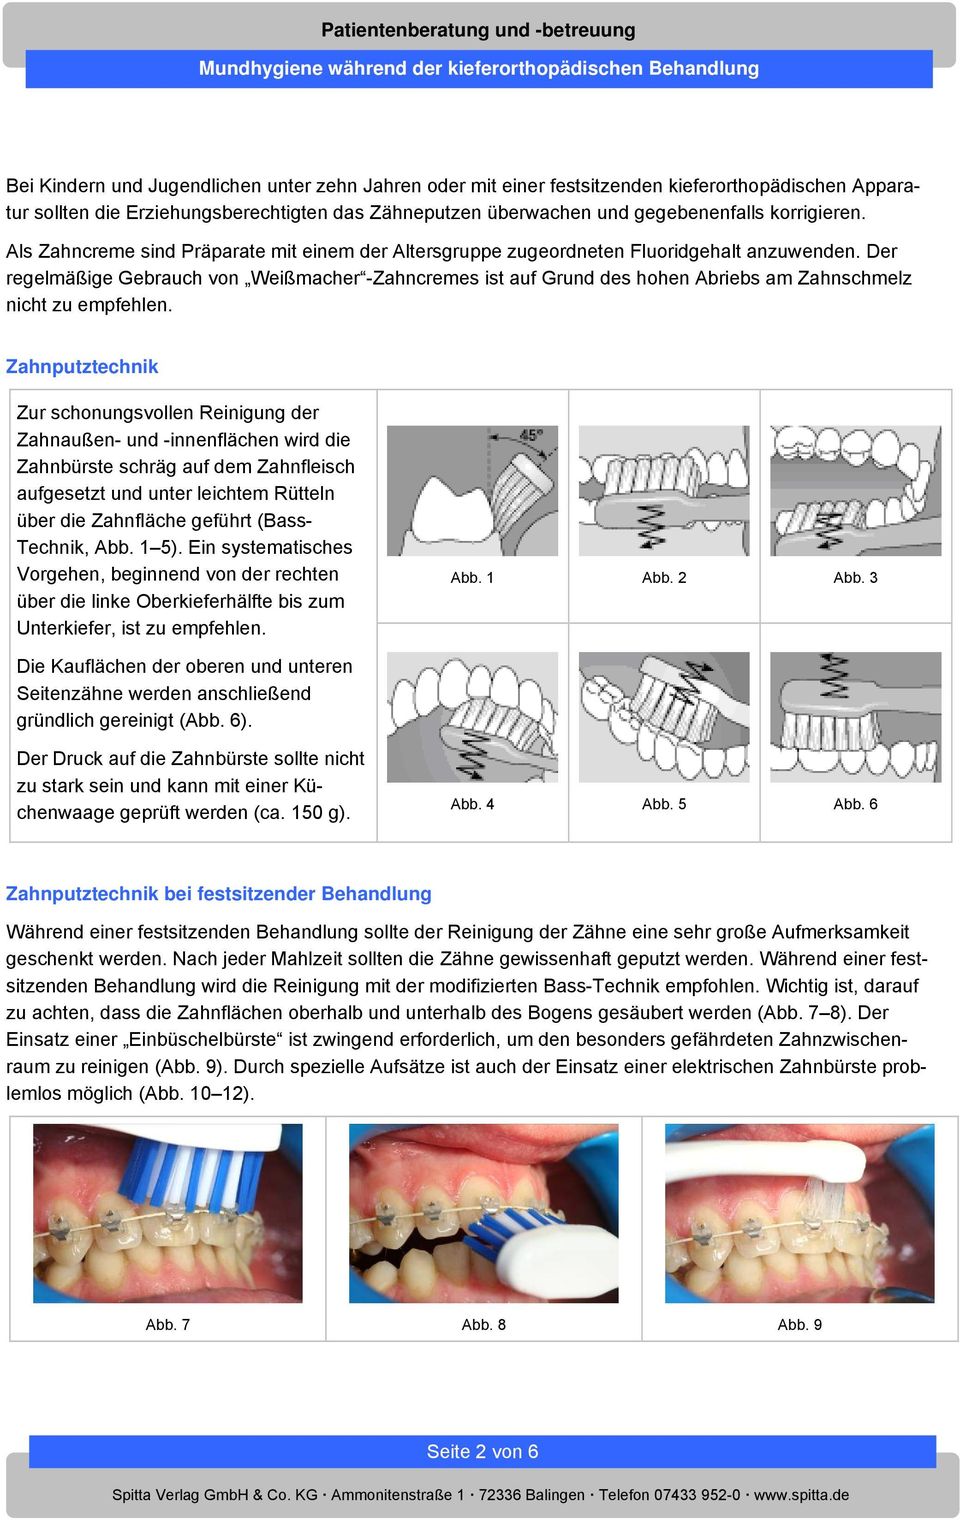 Der regelmäßige Gebrauch von Weißmacher -Zahncremes ist auf Grund des hohen Abriebs am Zahnschmelz nicht zu empfehlen.